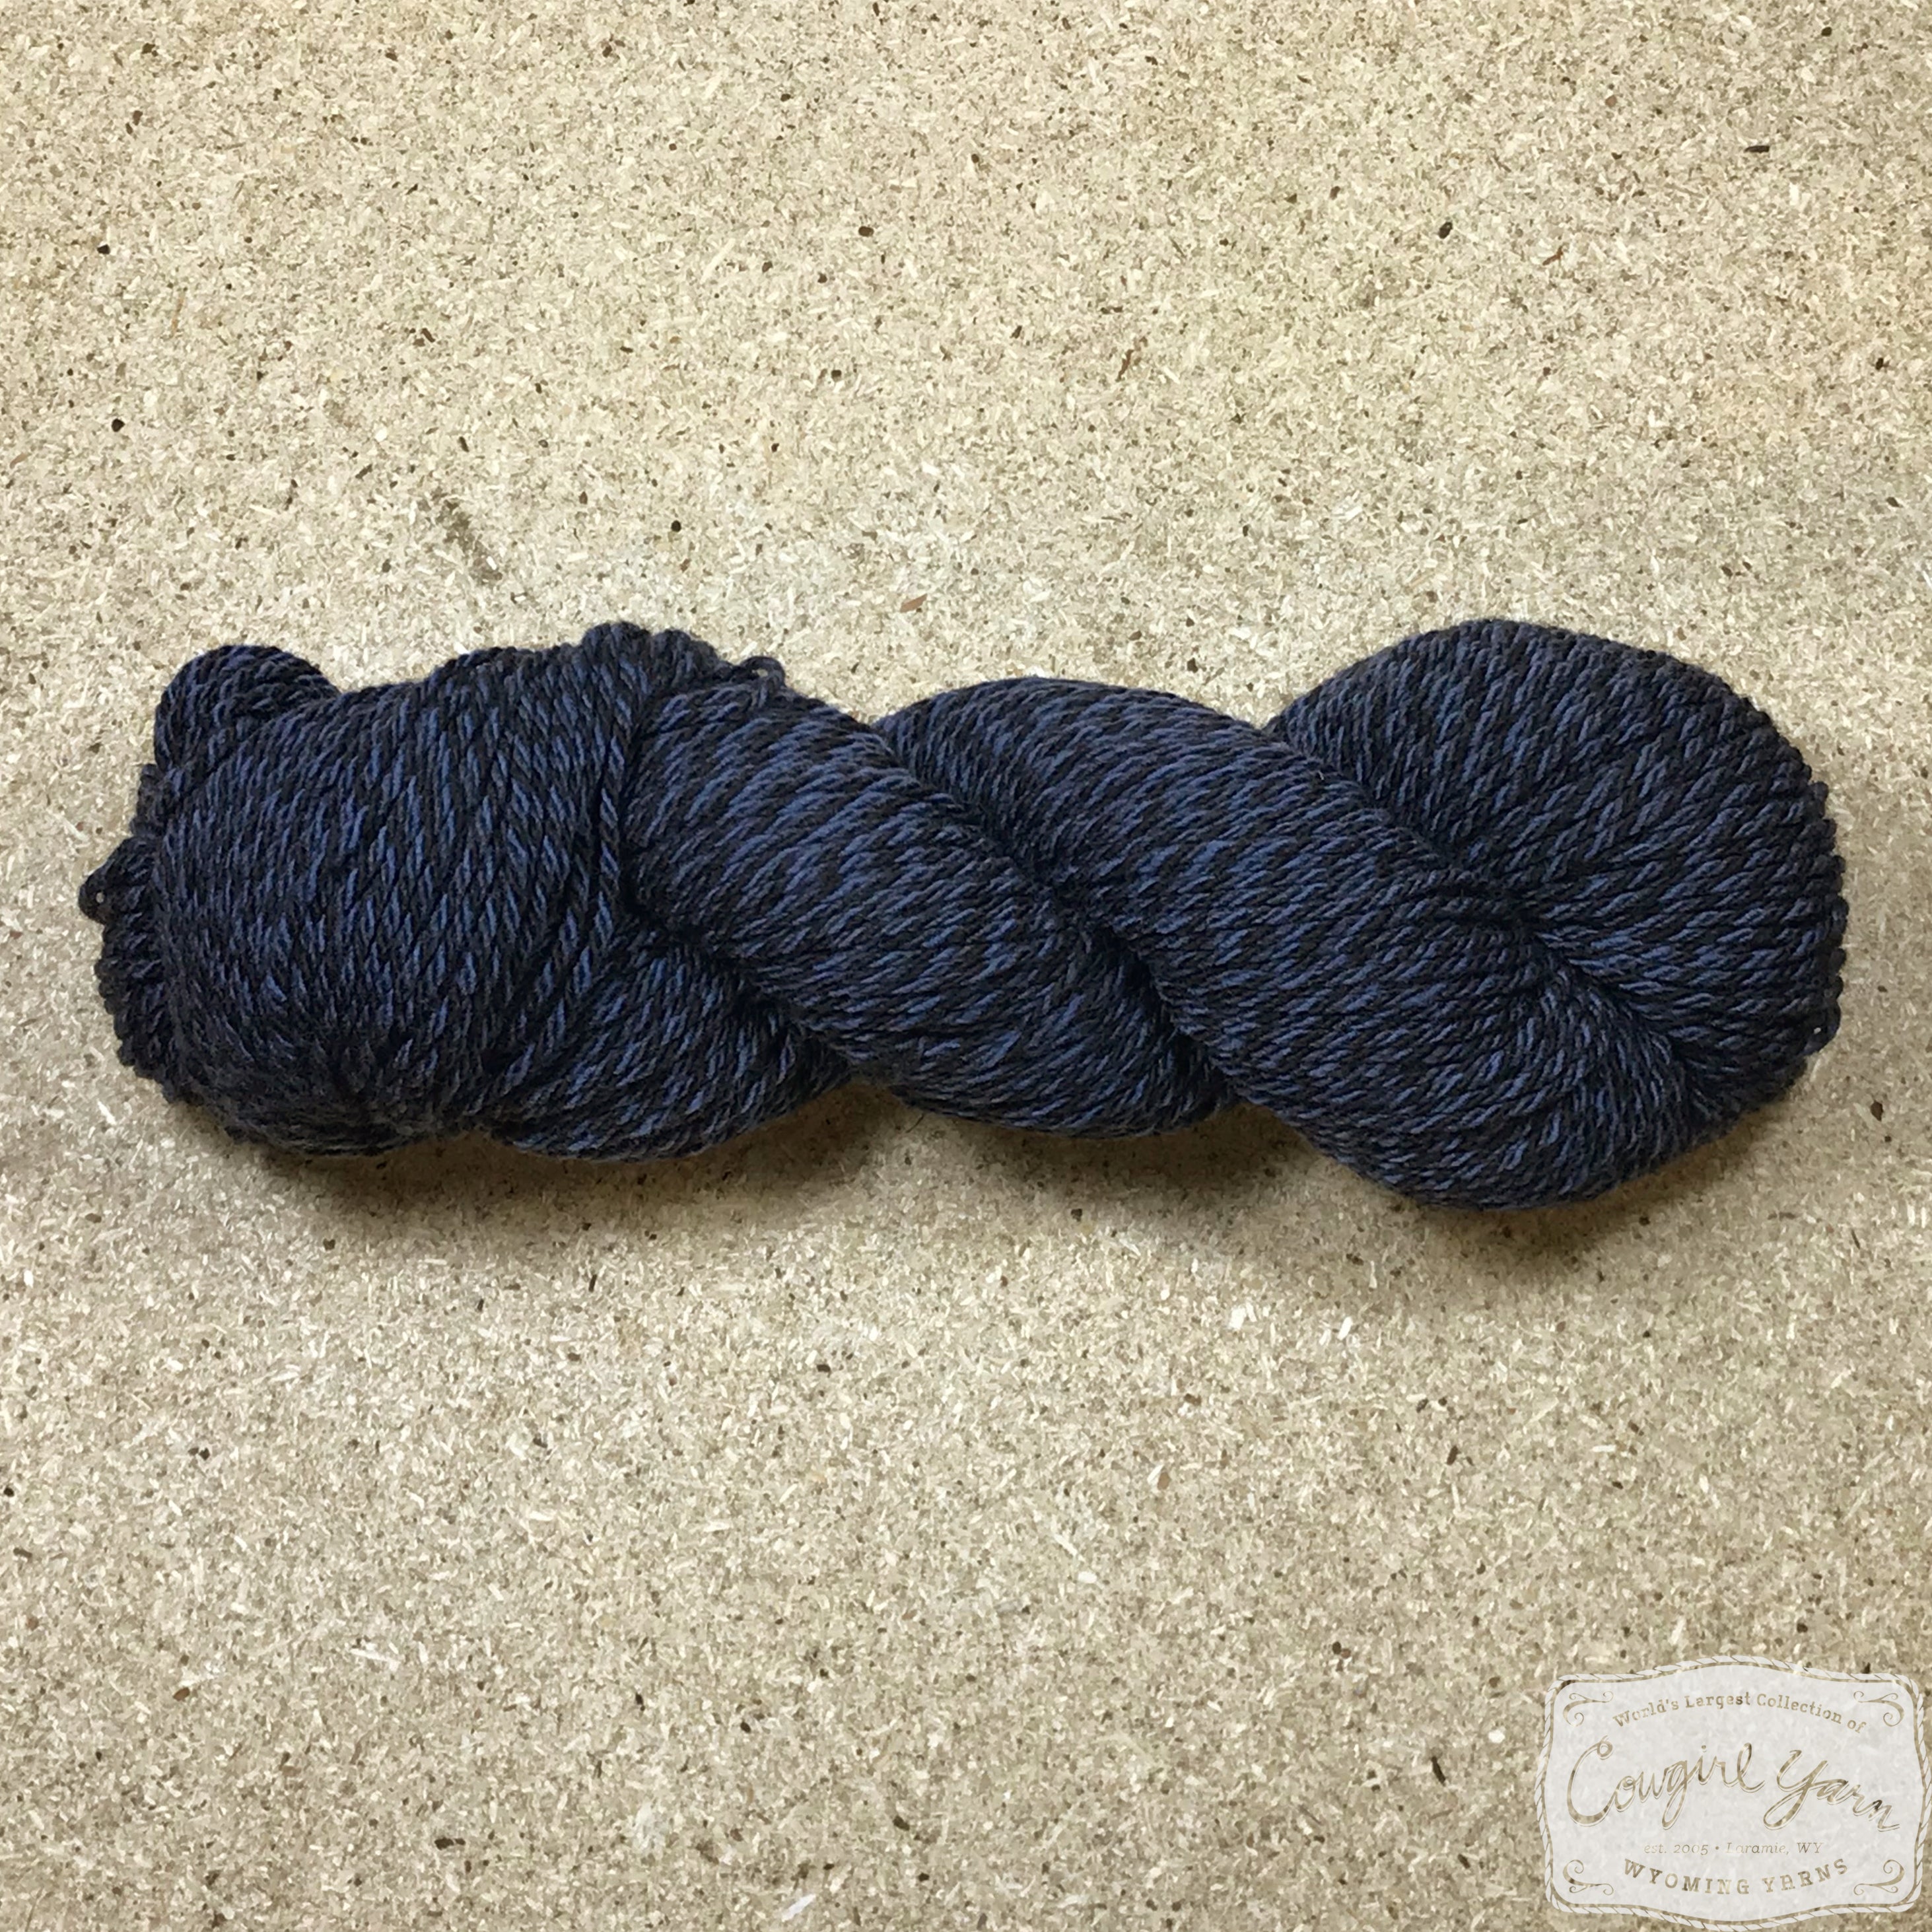 A navy blue tweed skein of Mountain Meadow Wool Tweed Worsted yarn